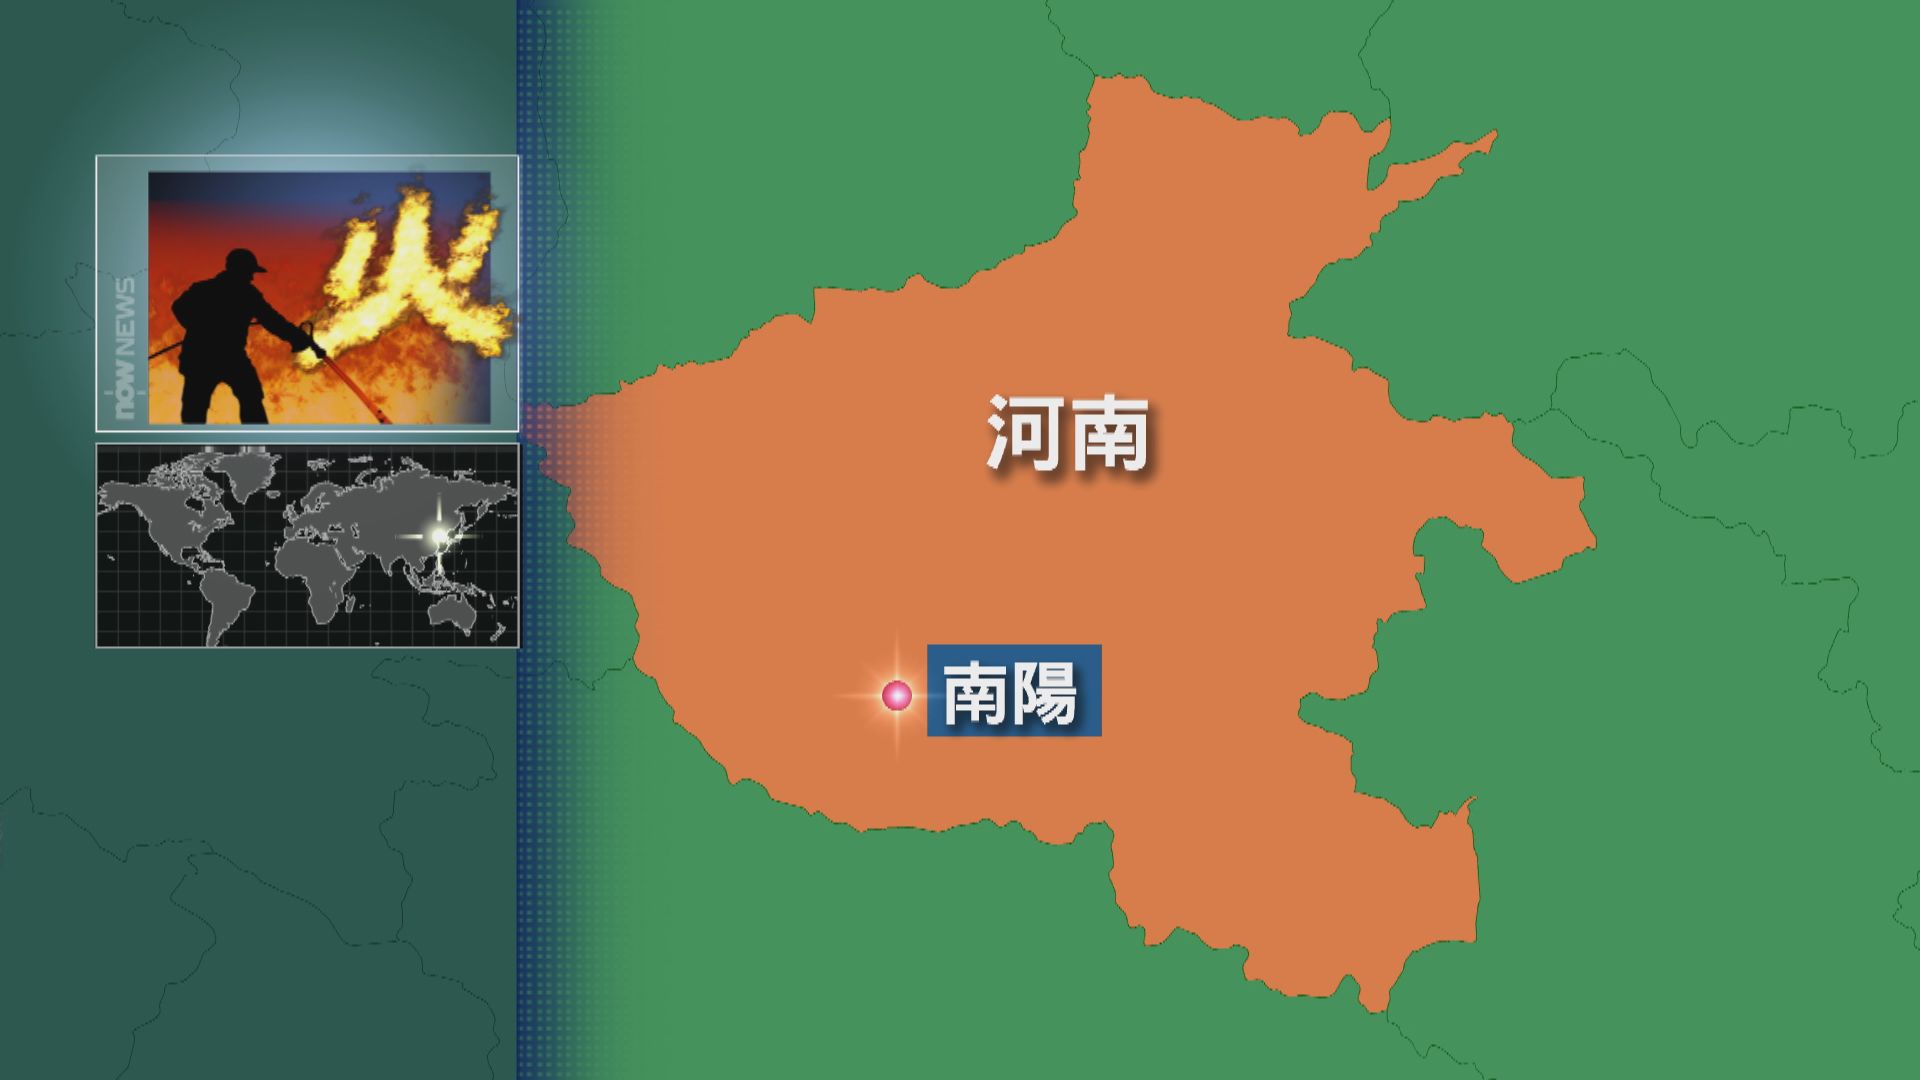 河南省南陽市有學校宿舍大火 釀13死1傷